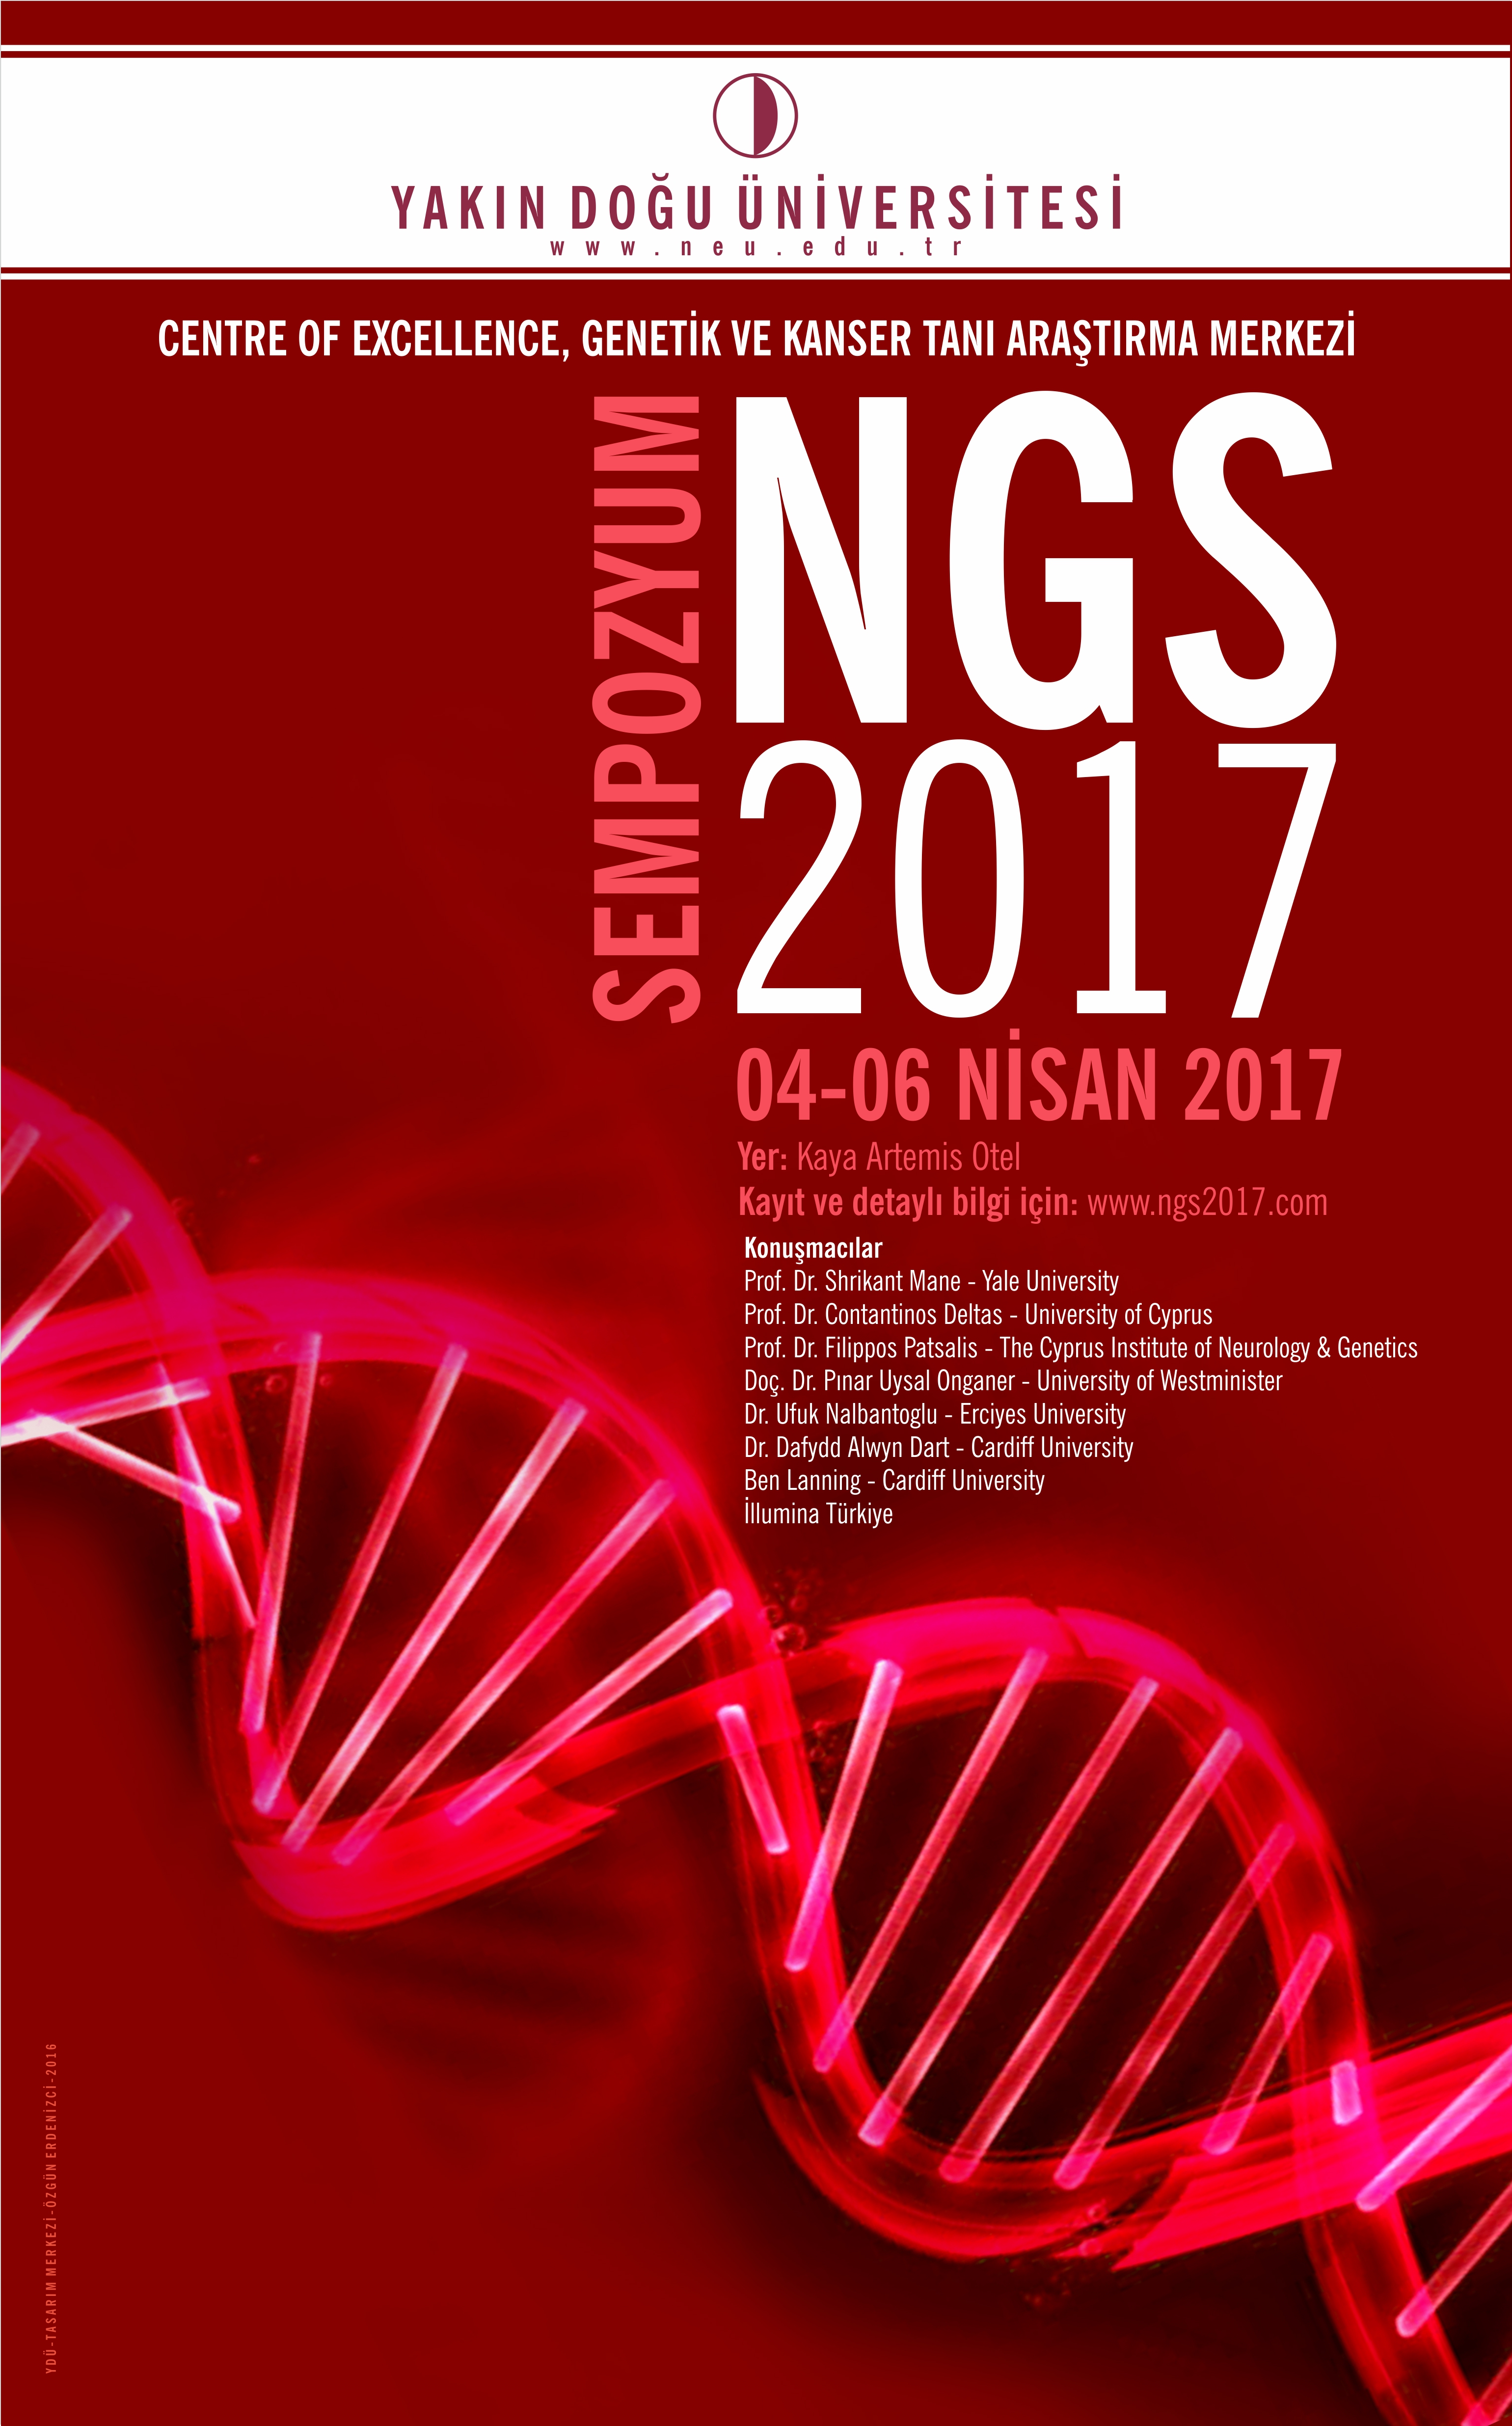 YDÜ Centre of Excellence, Genetik ve Kanser Tanı Araştırma Merkezi’nden Sempozyum “NGS 2017”